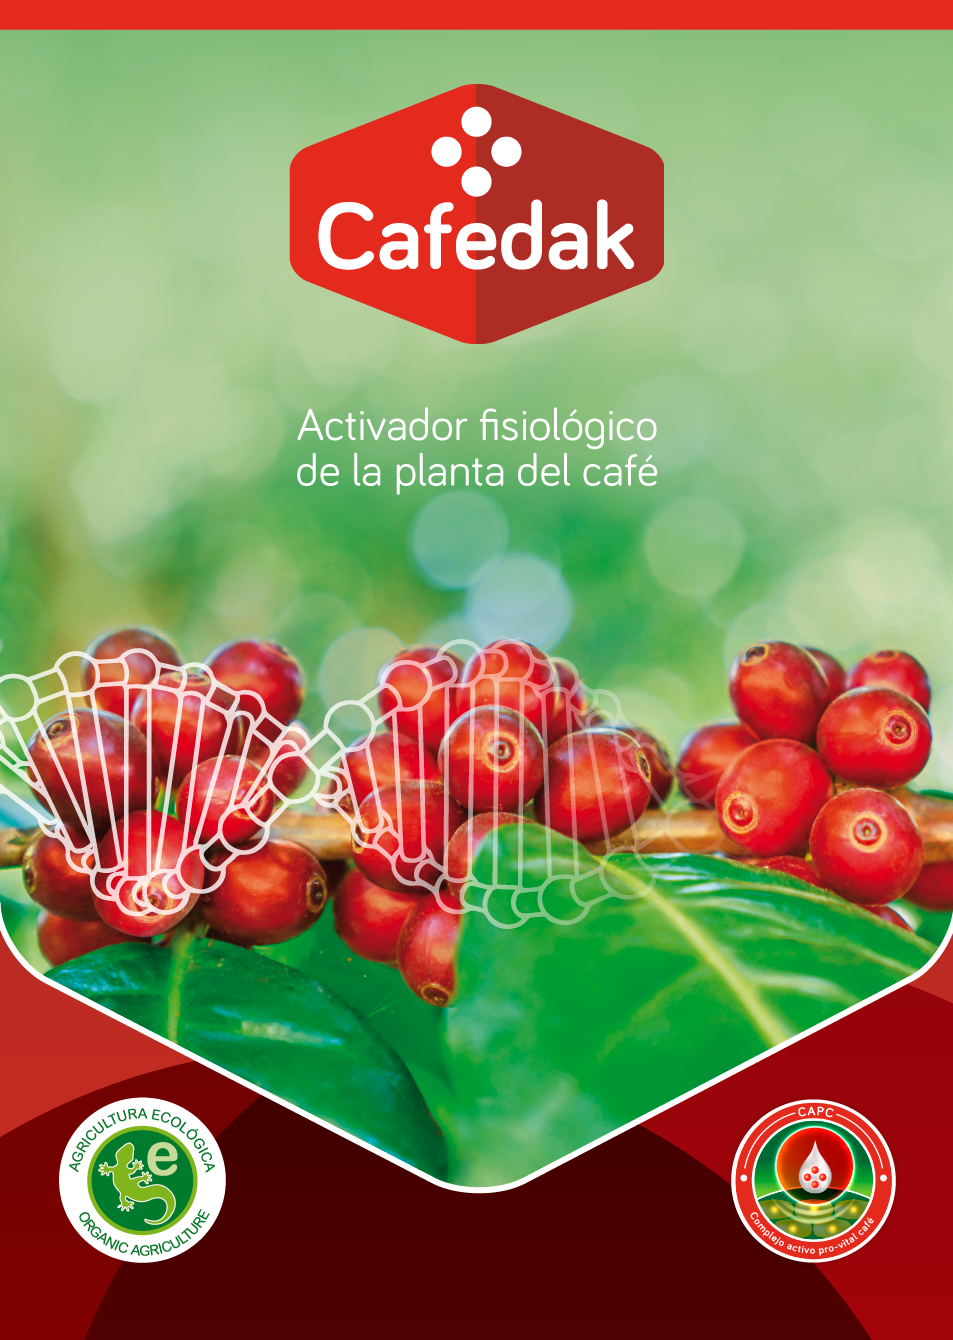 Cafedak: Activador fisiológico de la planta del café